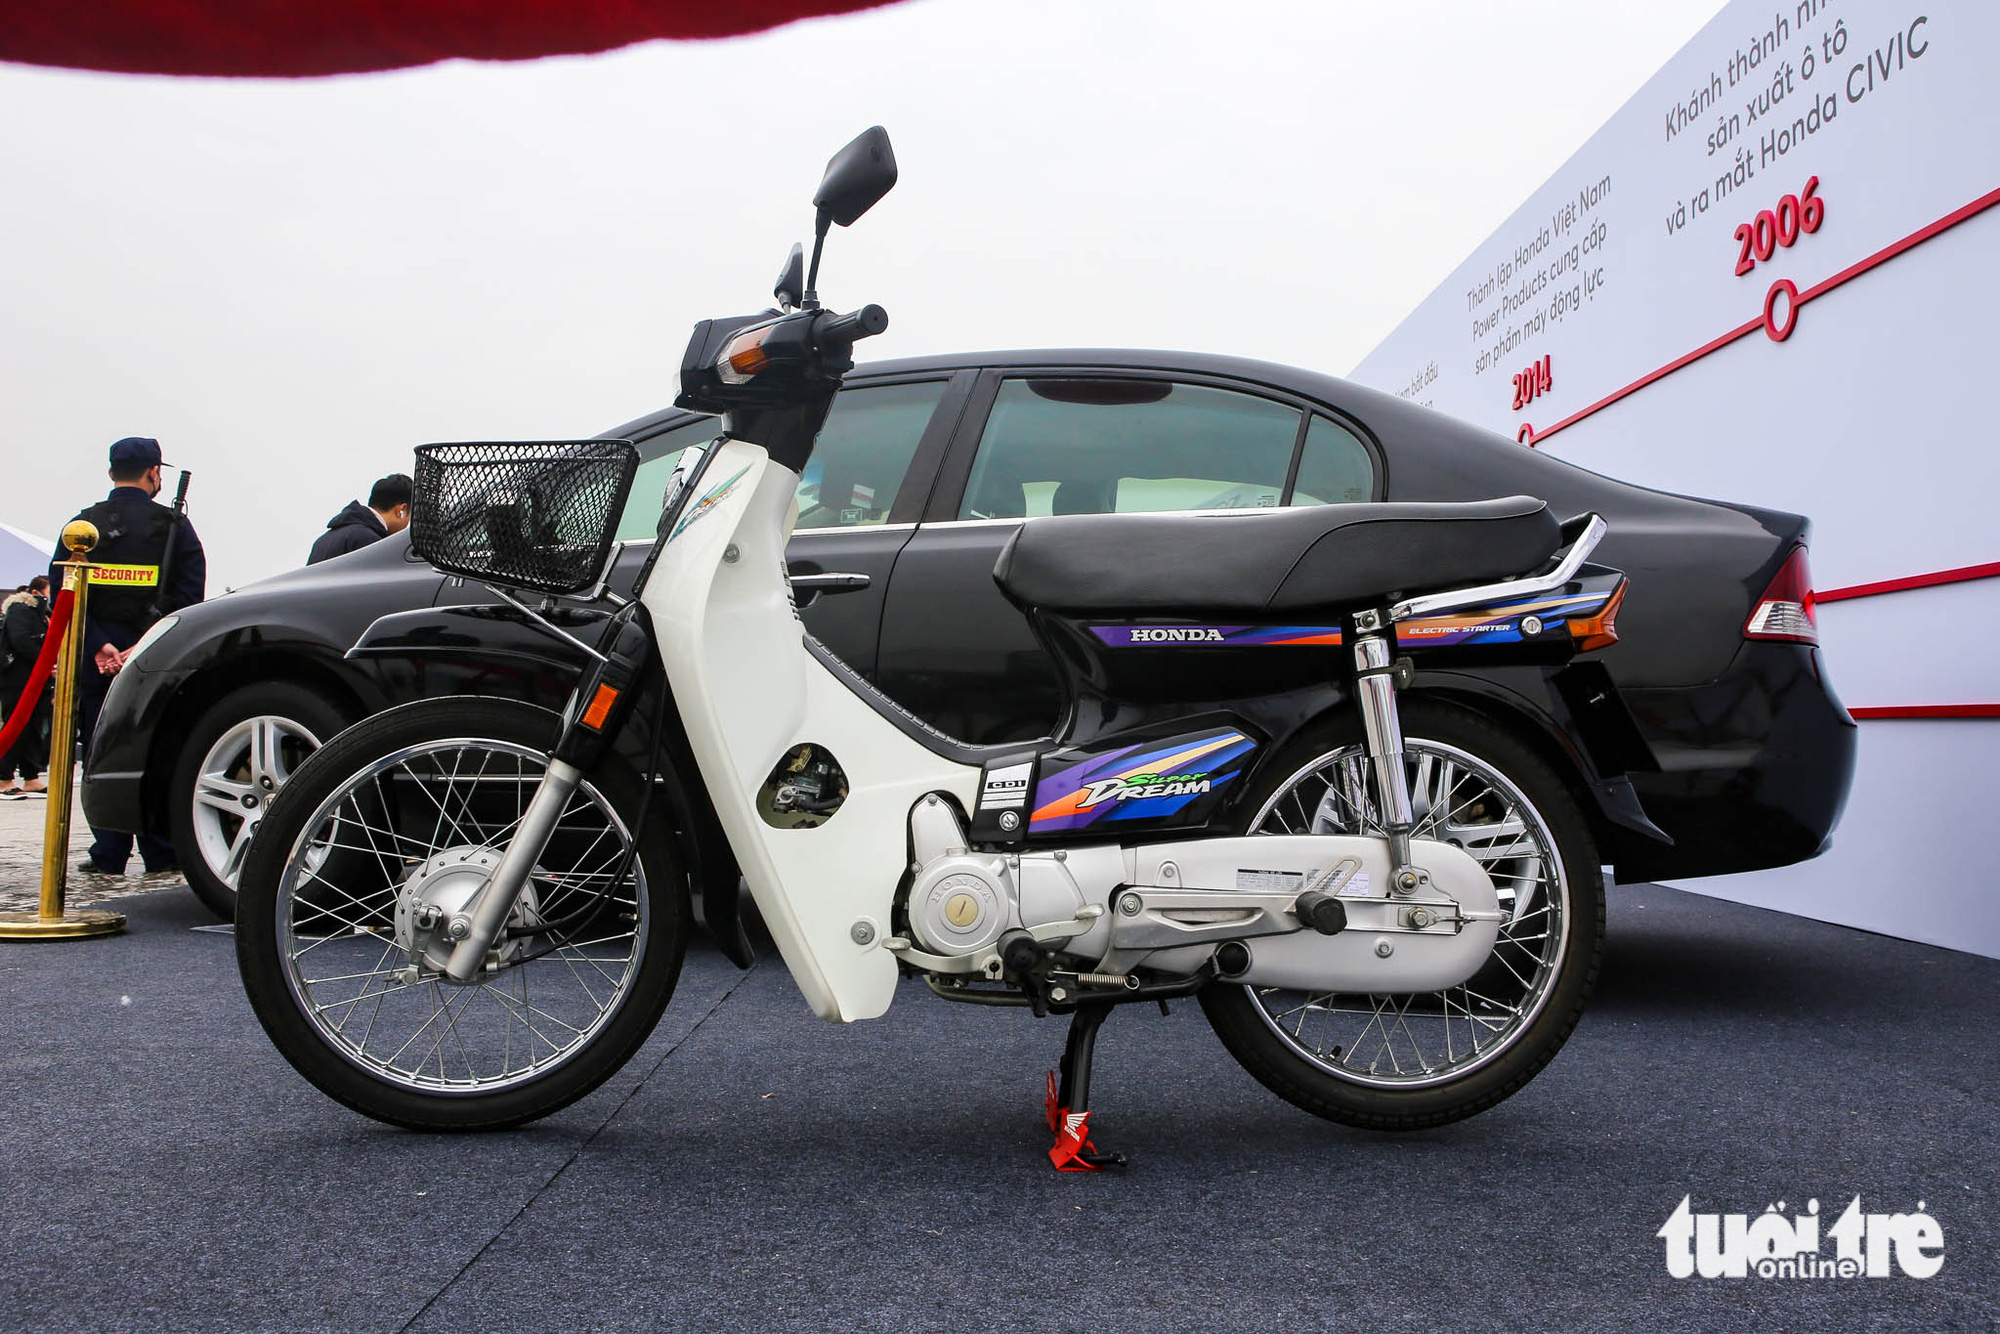 Honda Super Dream  Xe số mang nhiều hồi ức của người Việt  Tuổi Trẻ Online